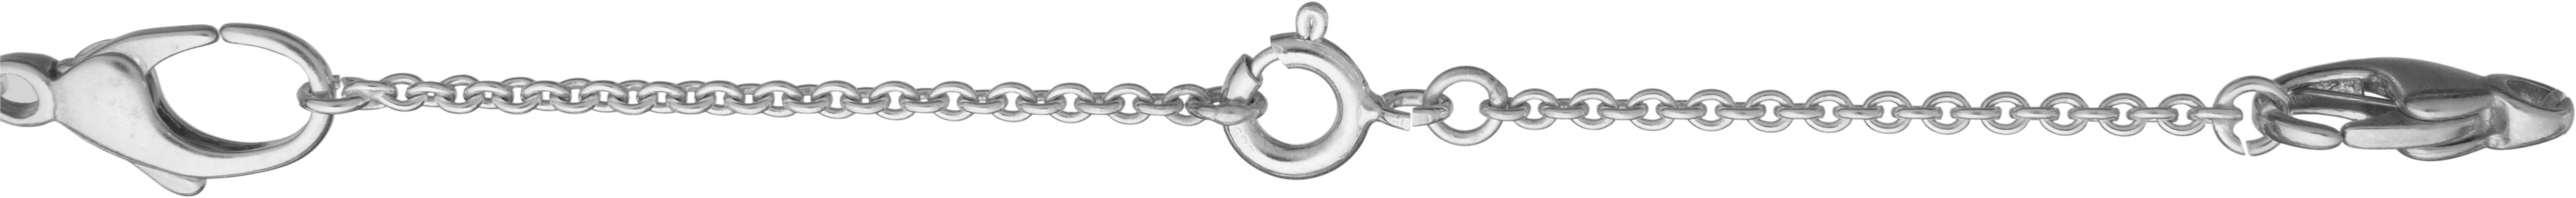 veiligheidsketting anker zilver 925/- lengte 70,00mm, met veerringen en open bindringen